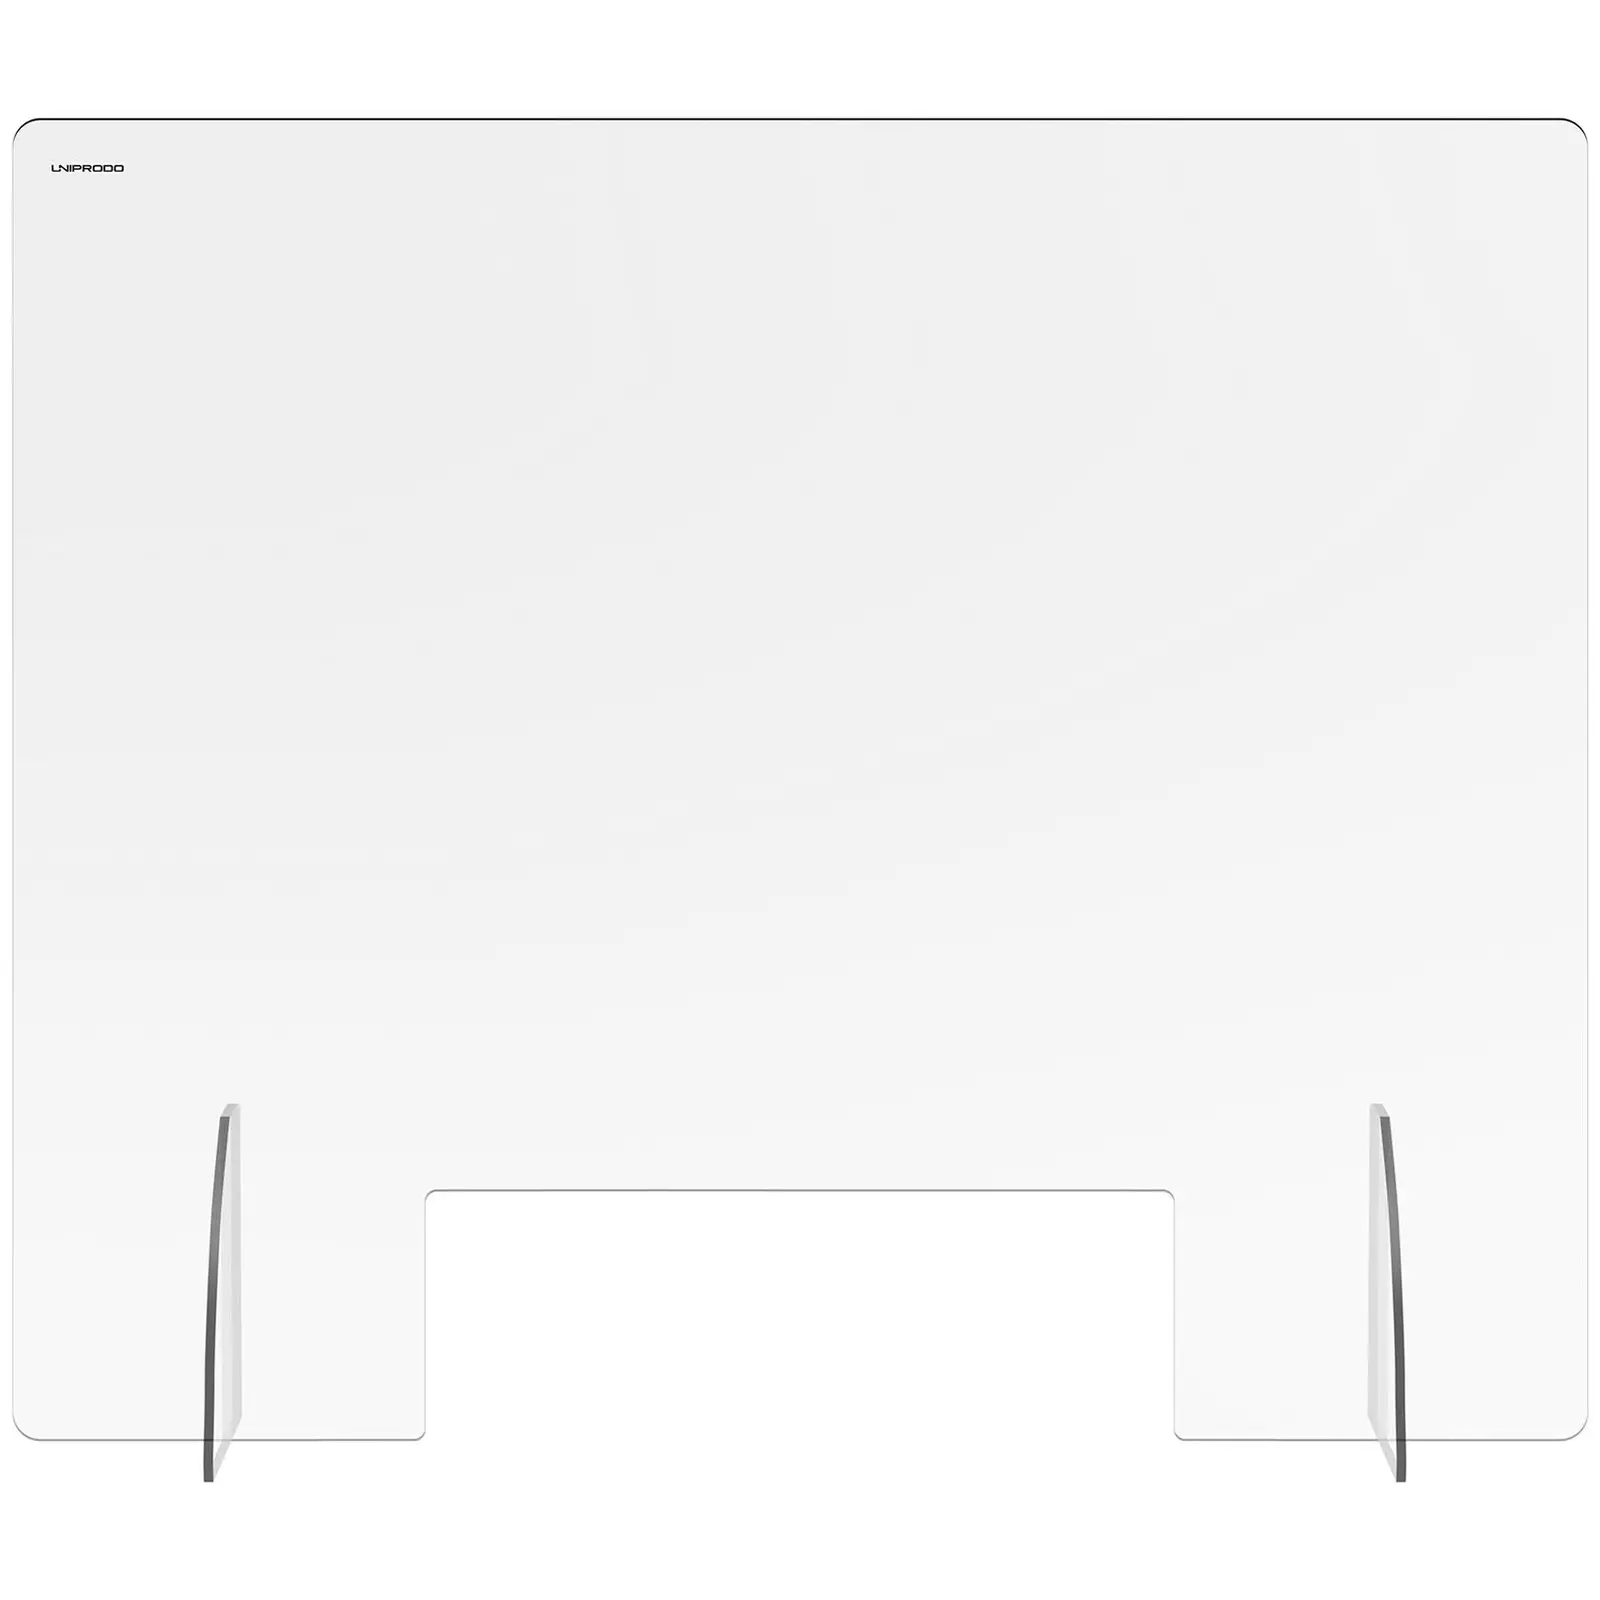 Parafiato in plexiglass - 95 x 80 cm - Vetro acrilico - Apertura: 30 x 10 cm